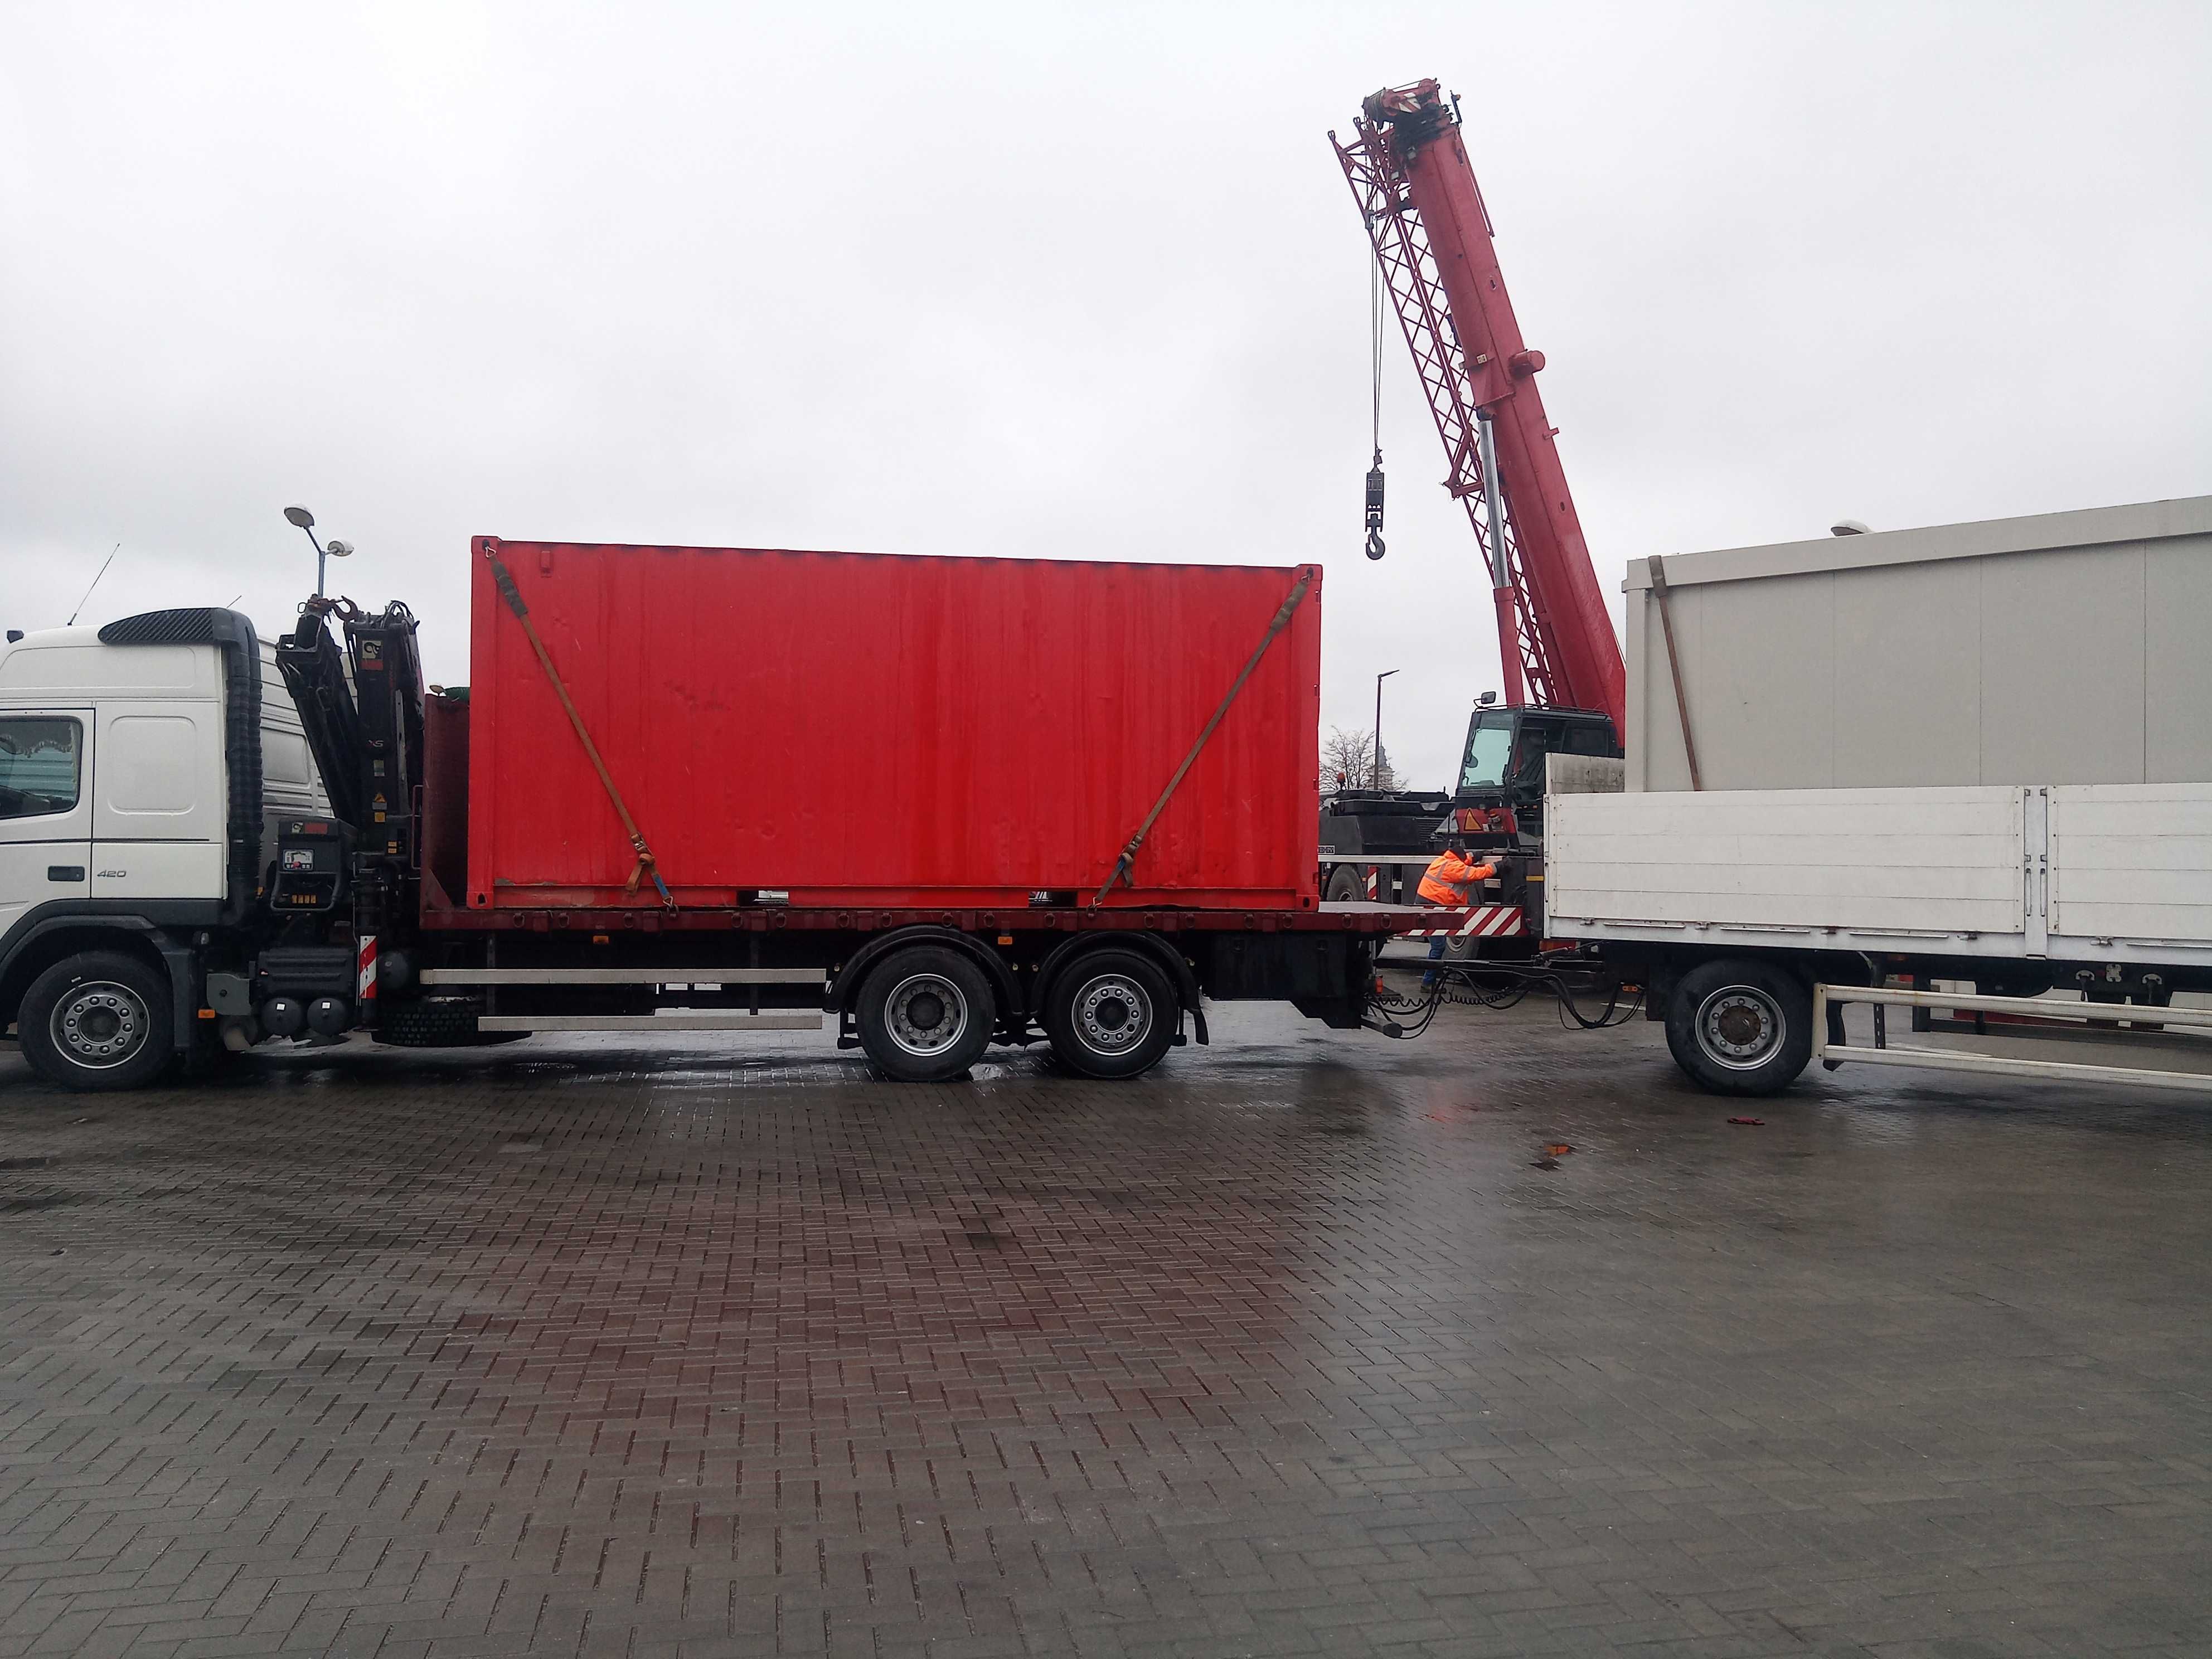 Usługi transportowe HDS kontenery ciągniki rolnicze.